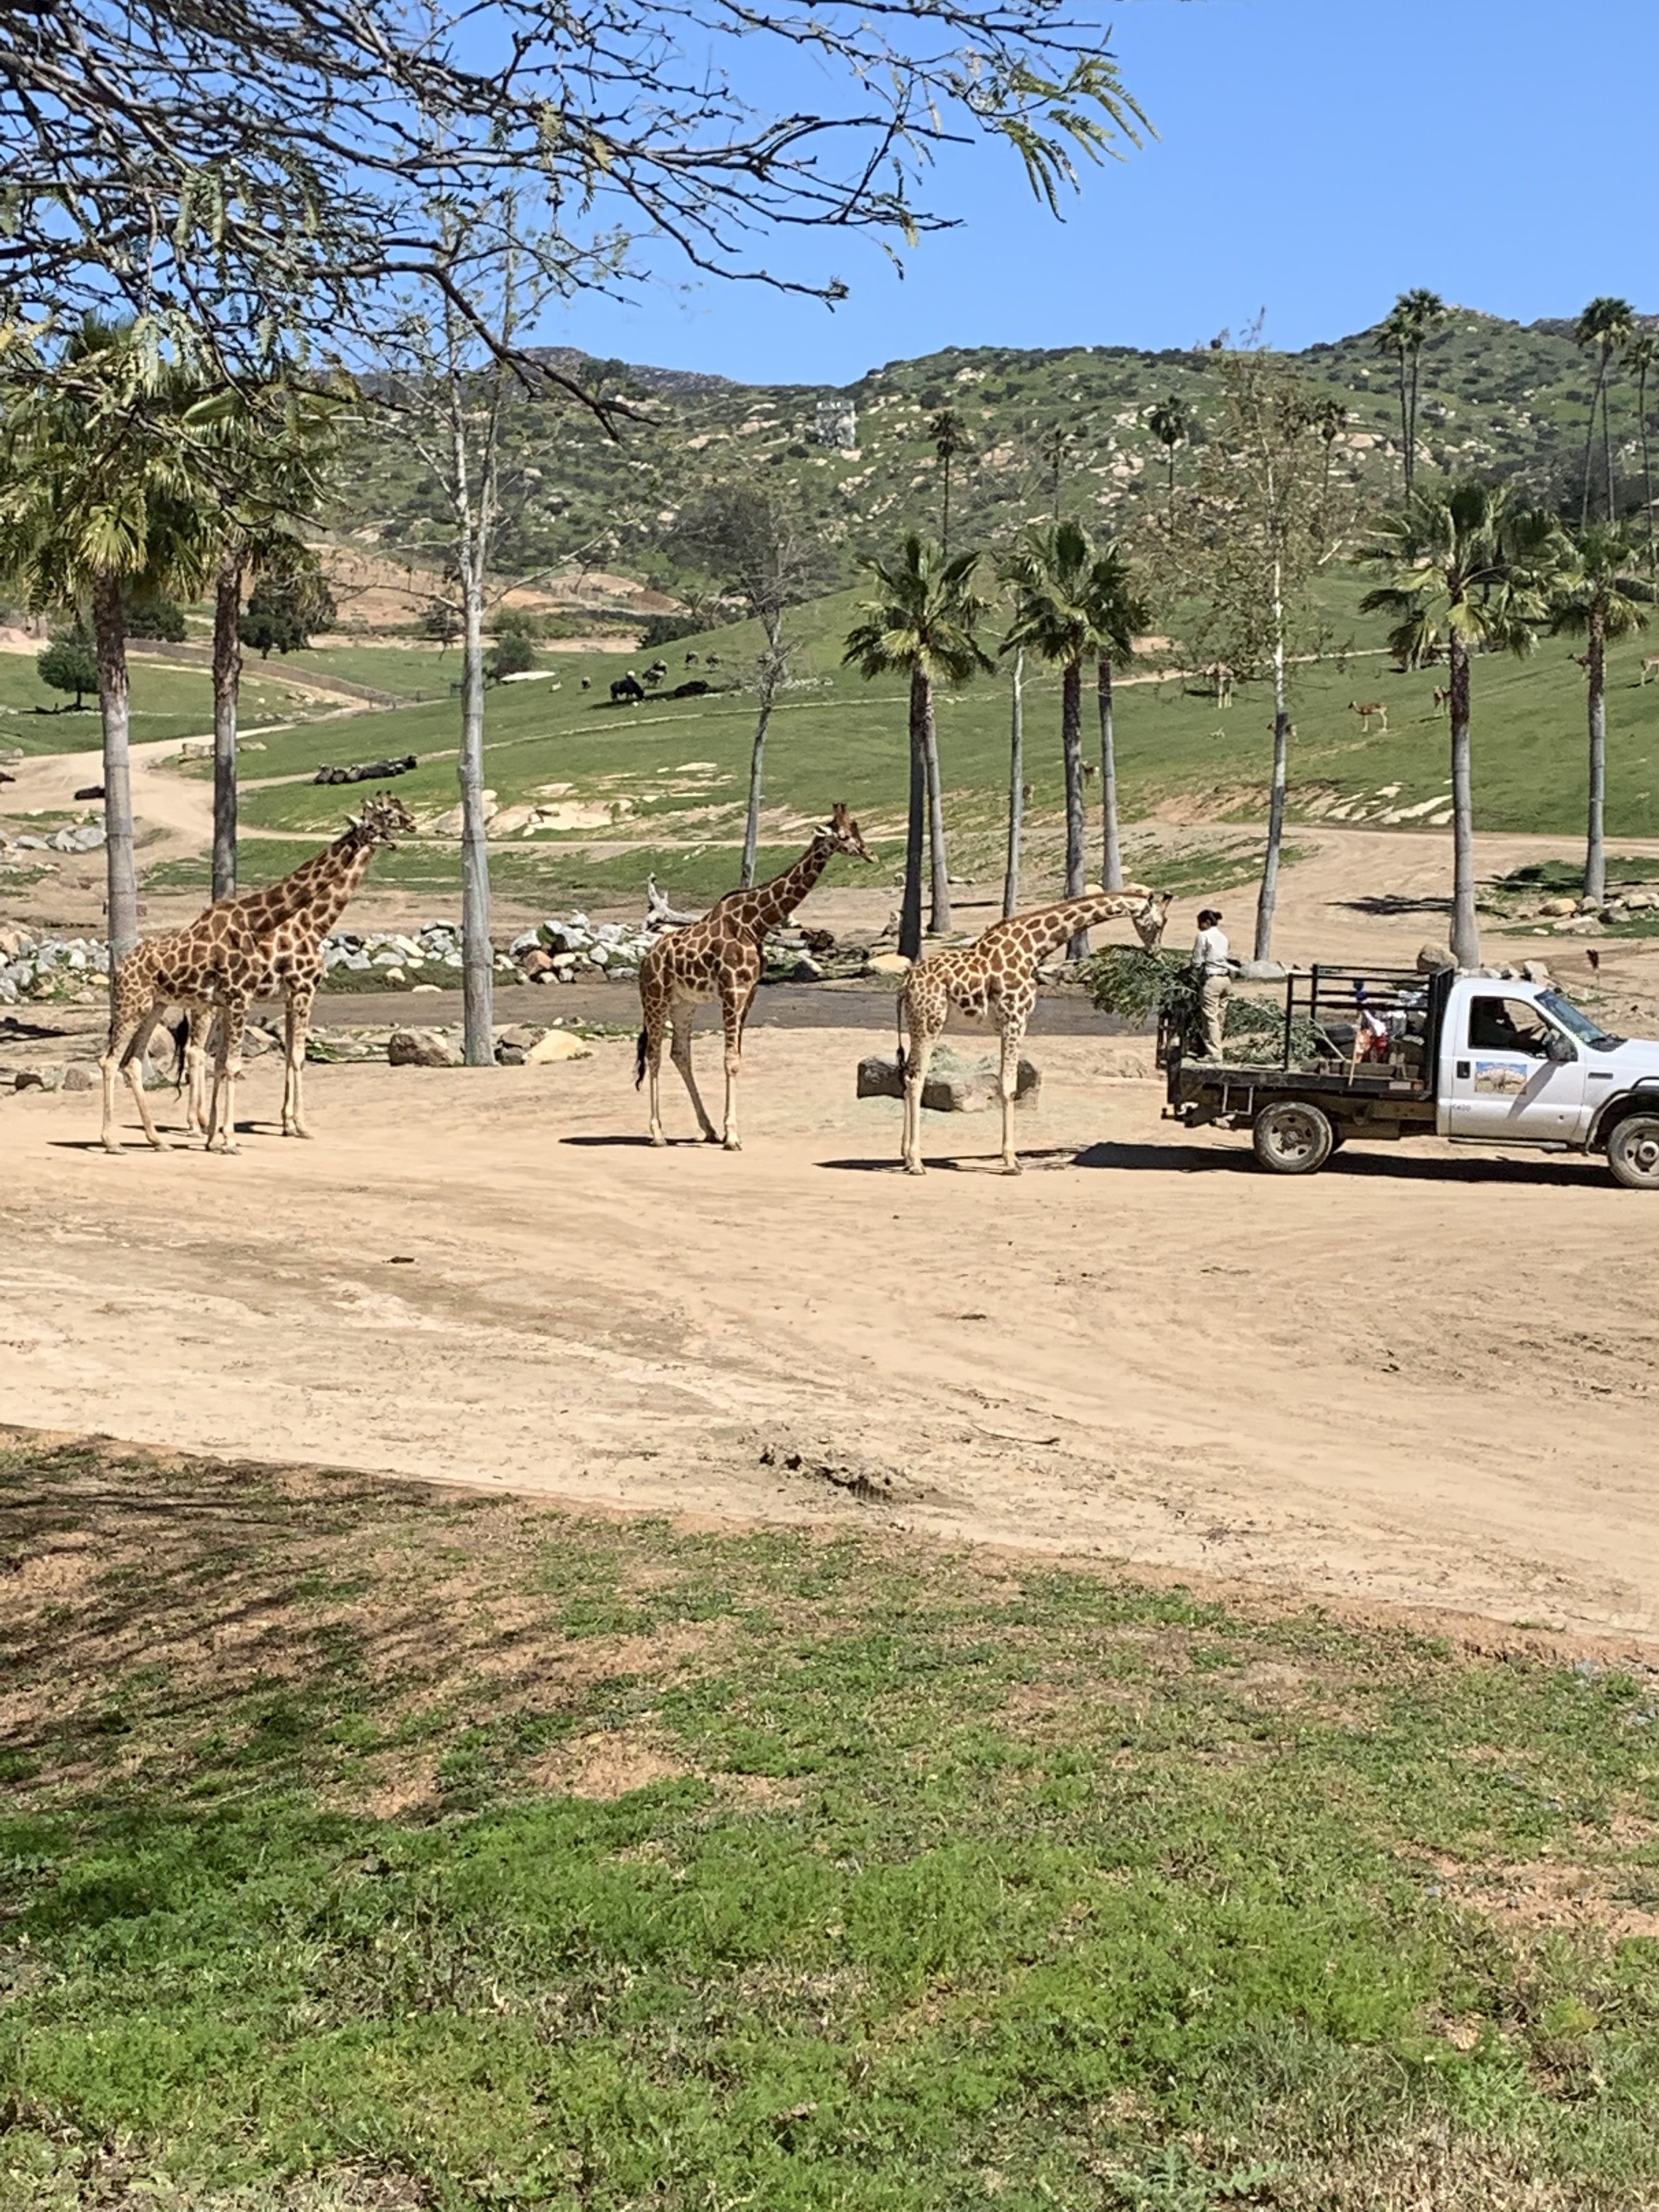 San Diego Zoo Safari Park Tram Ride Giraffes